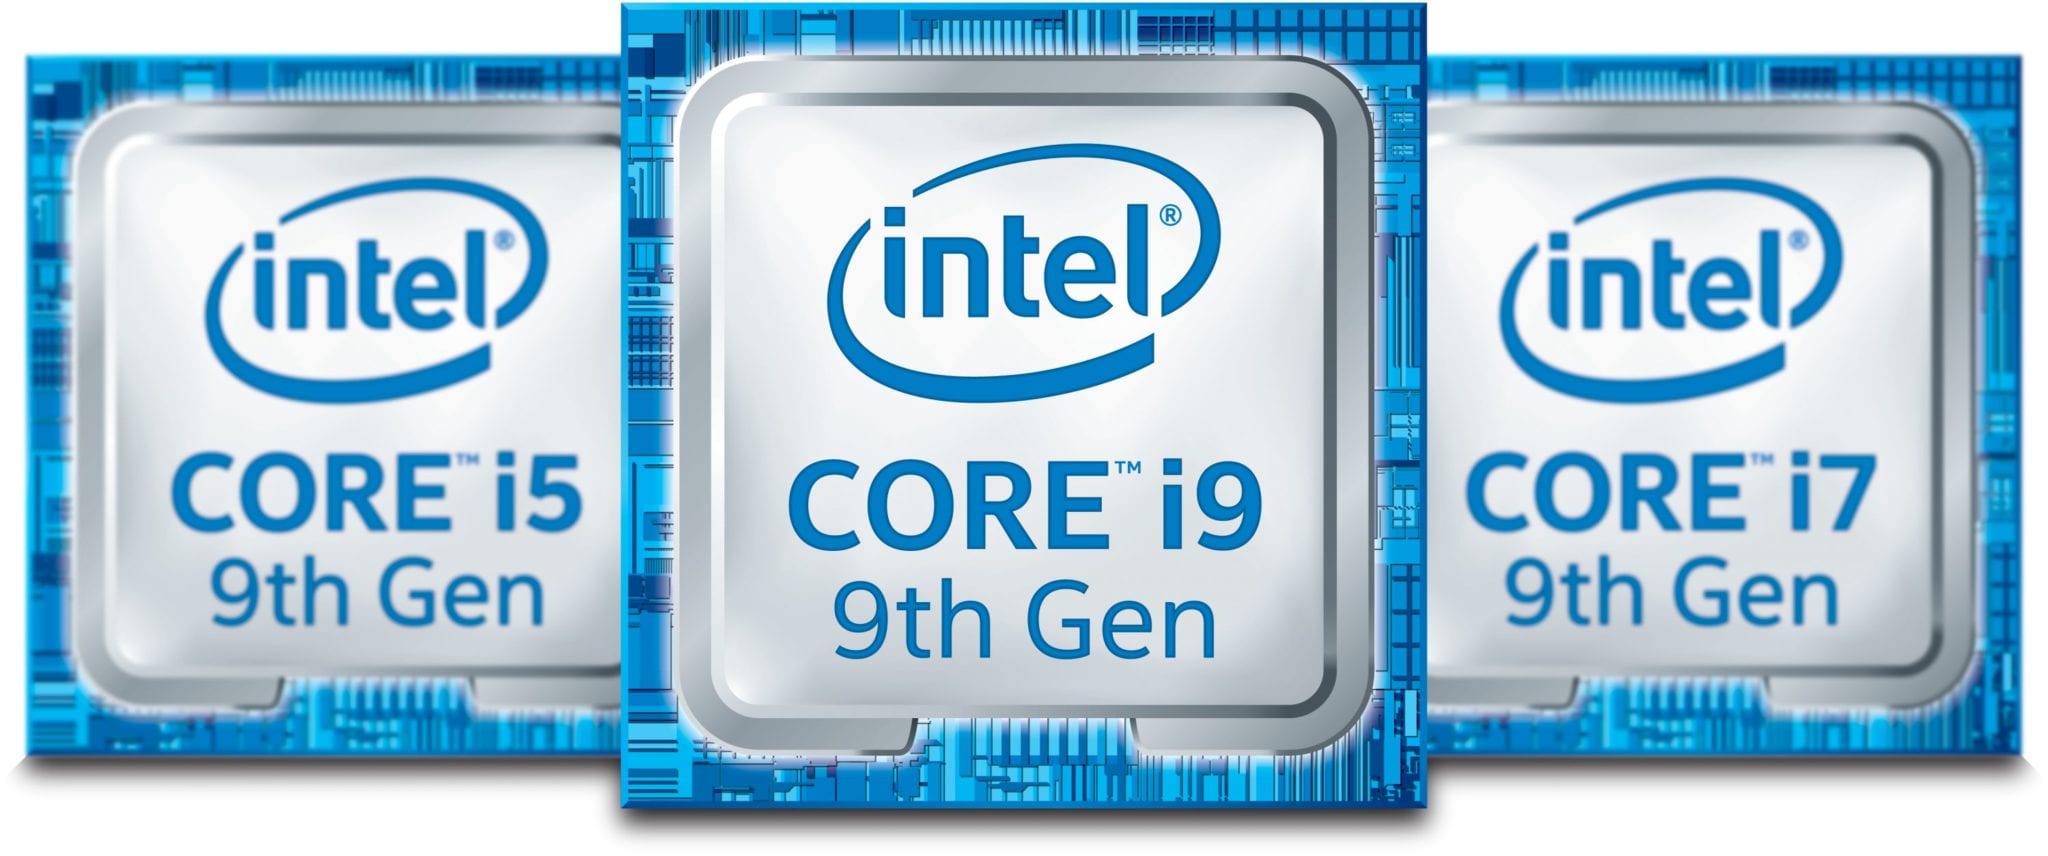 9th Gen Intel Core I9 9900kf I7 9700kf I5 9600kf I5 9400f Prices Listed By Norwegian Finnish Retailers